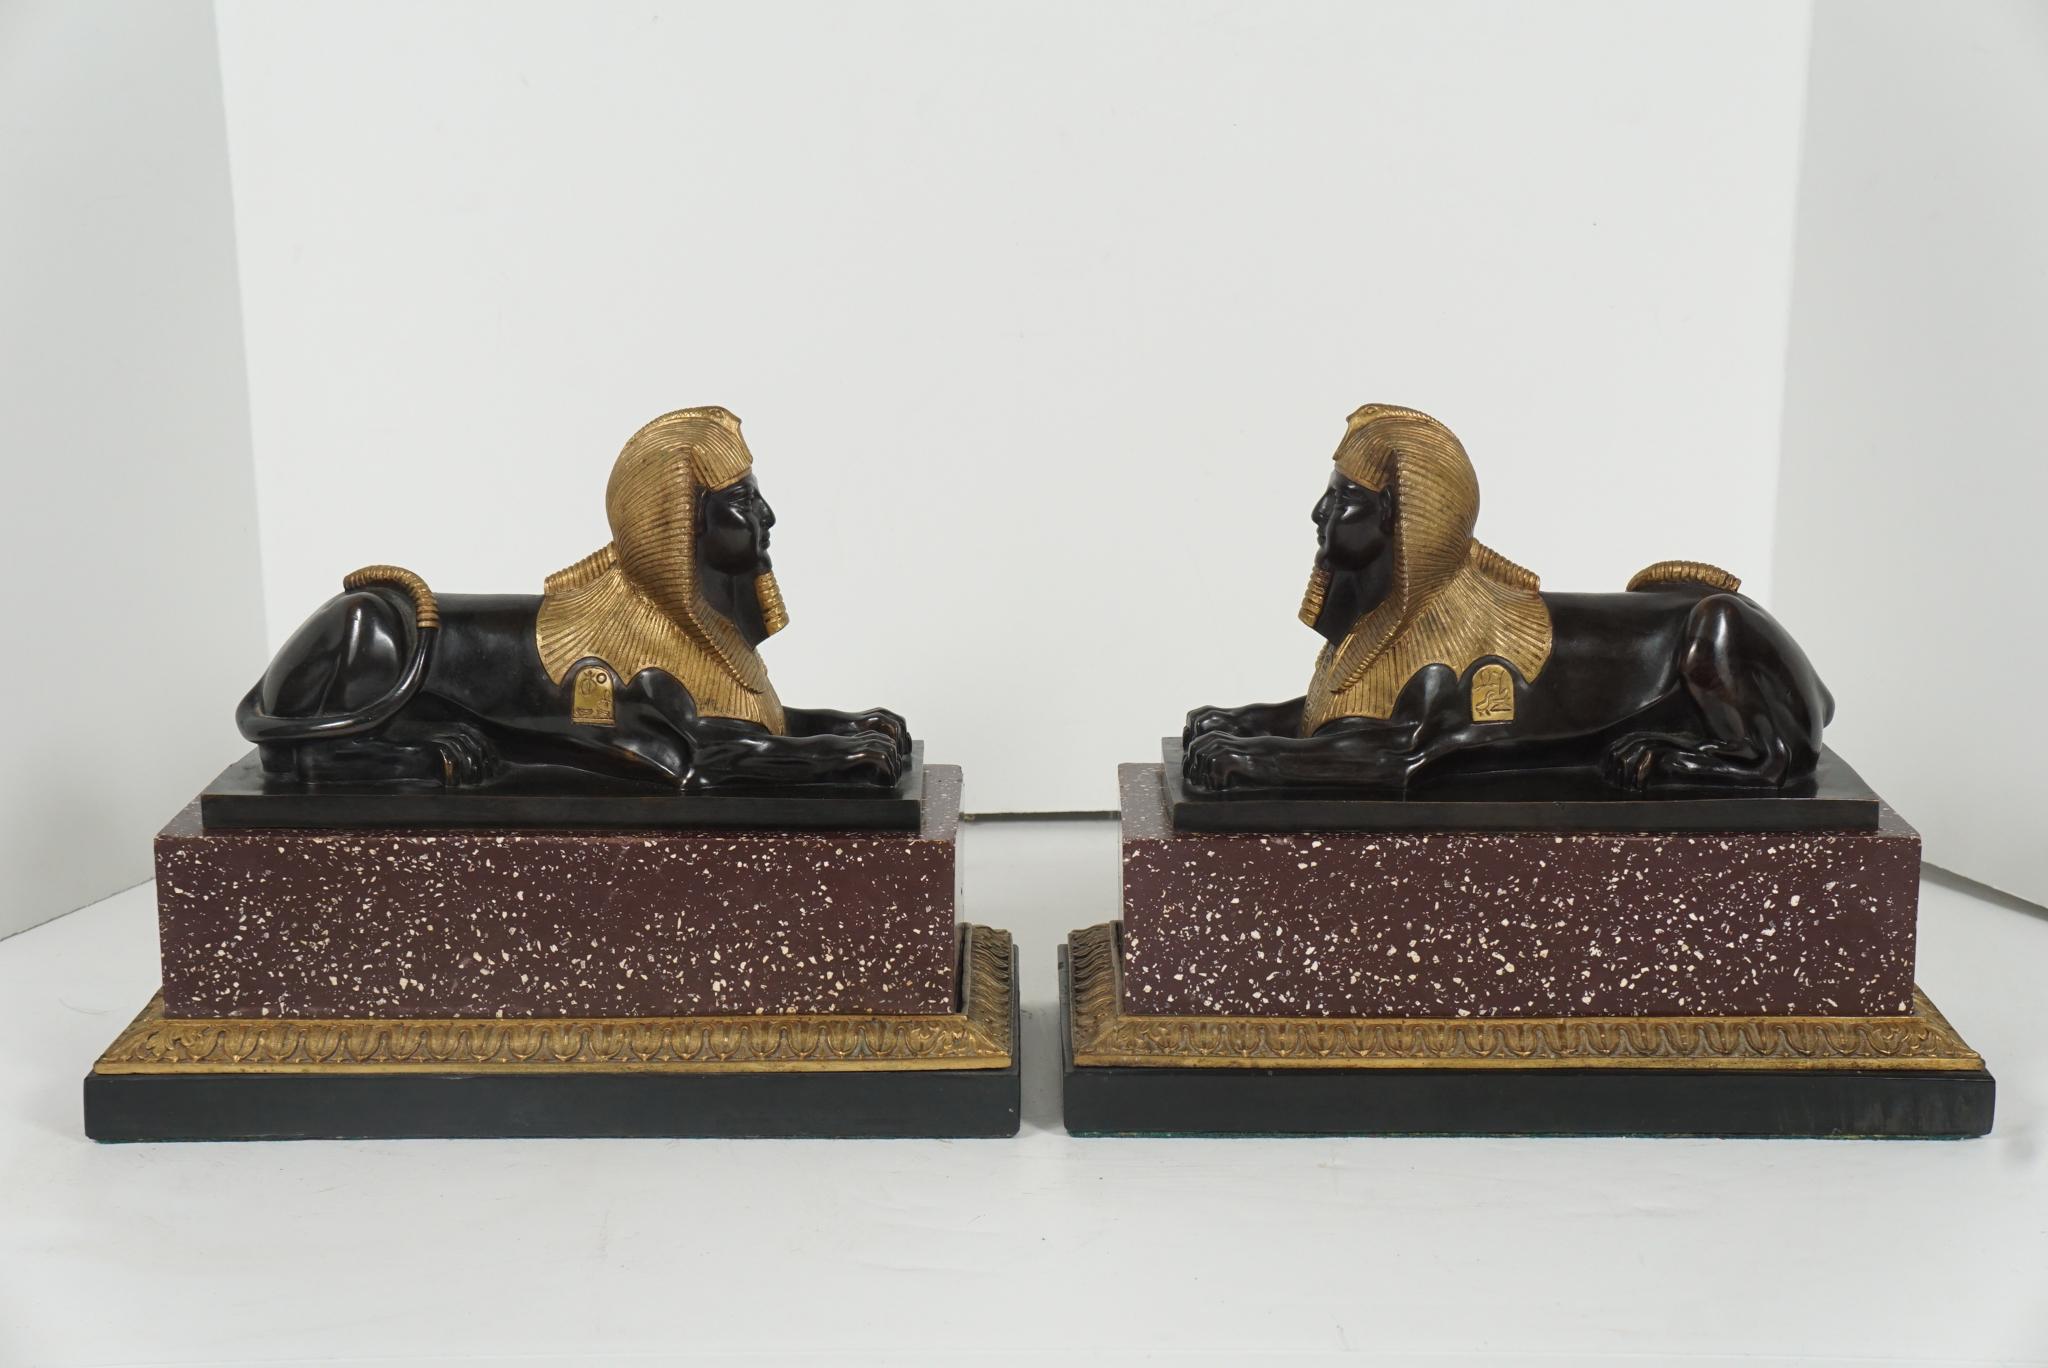 Dieses fein gegossene Sphinxpaar wurde um 1840 in Frankreich hergestellt und ist in der liegenden Position dargestellt, die am meisten mit dieser Form assoziiert wird. Auf beiden Figuren sind zwei Hieroglyphenkartuschen zu sehen, die ebenso